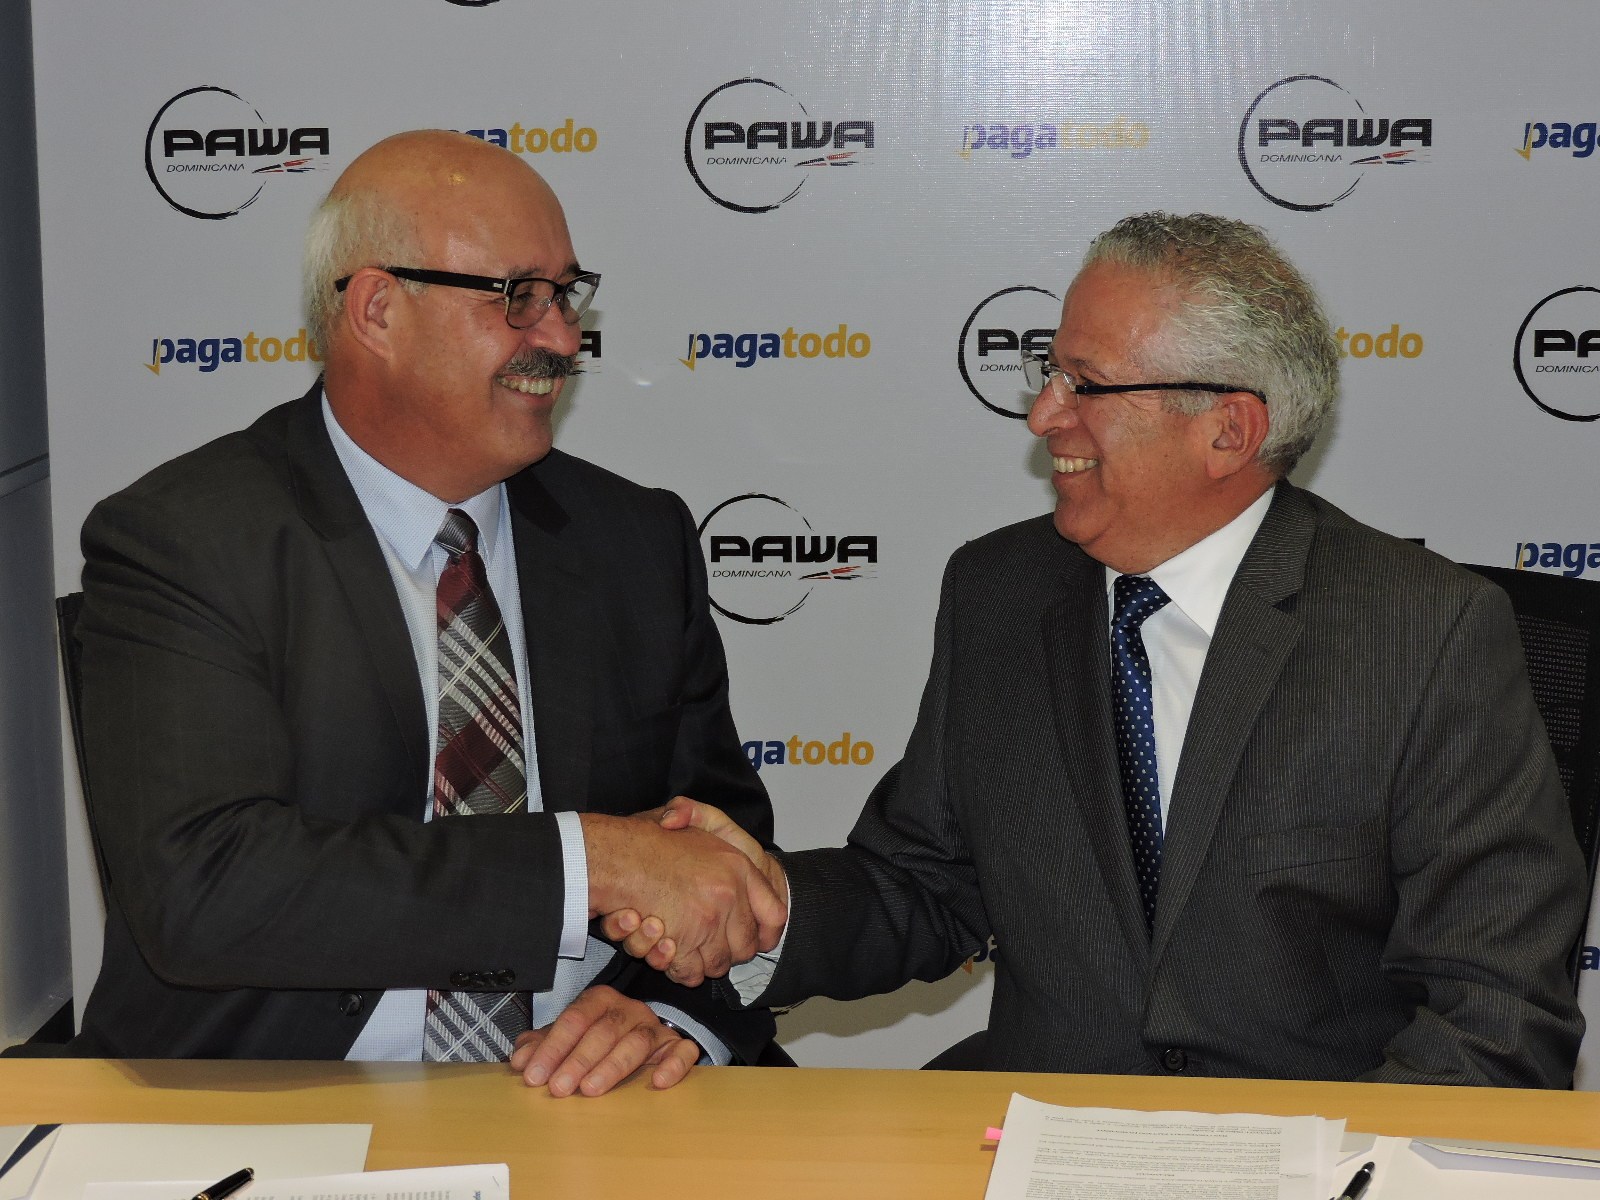 PAWA Dominicana firma alianza comercial con PagaTodo